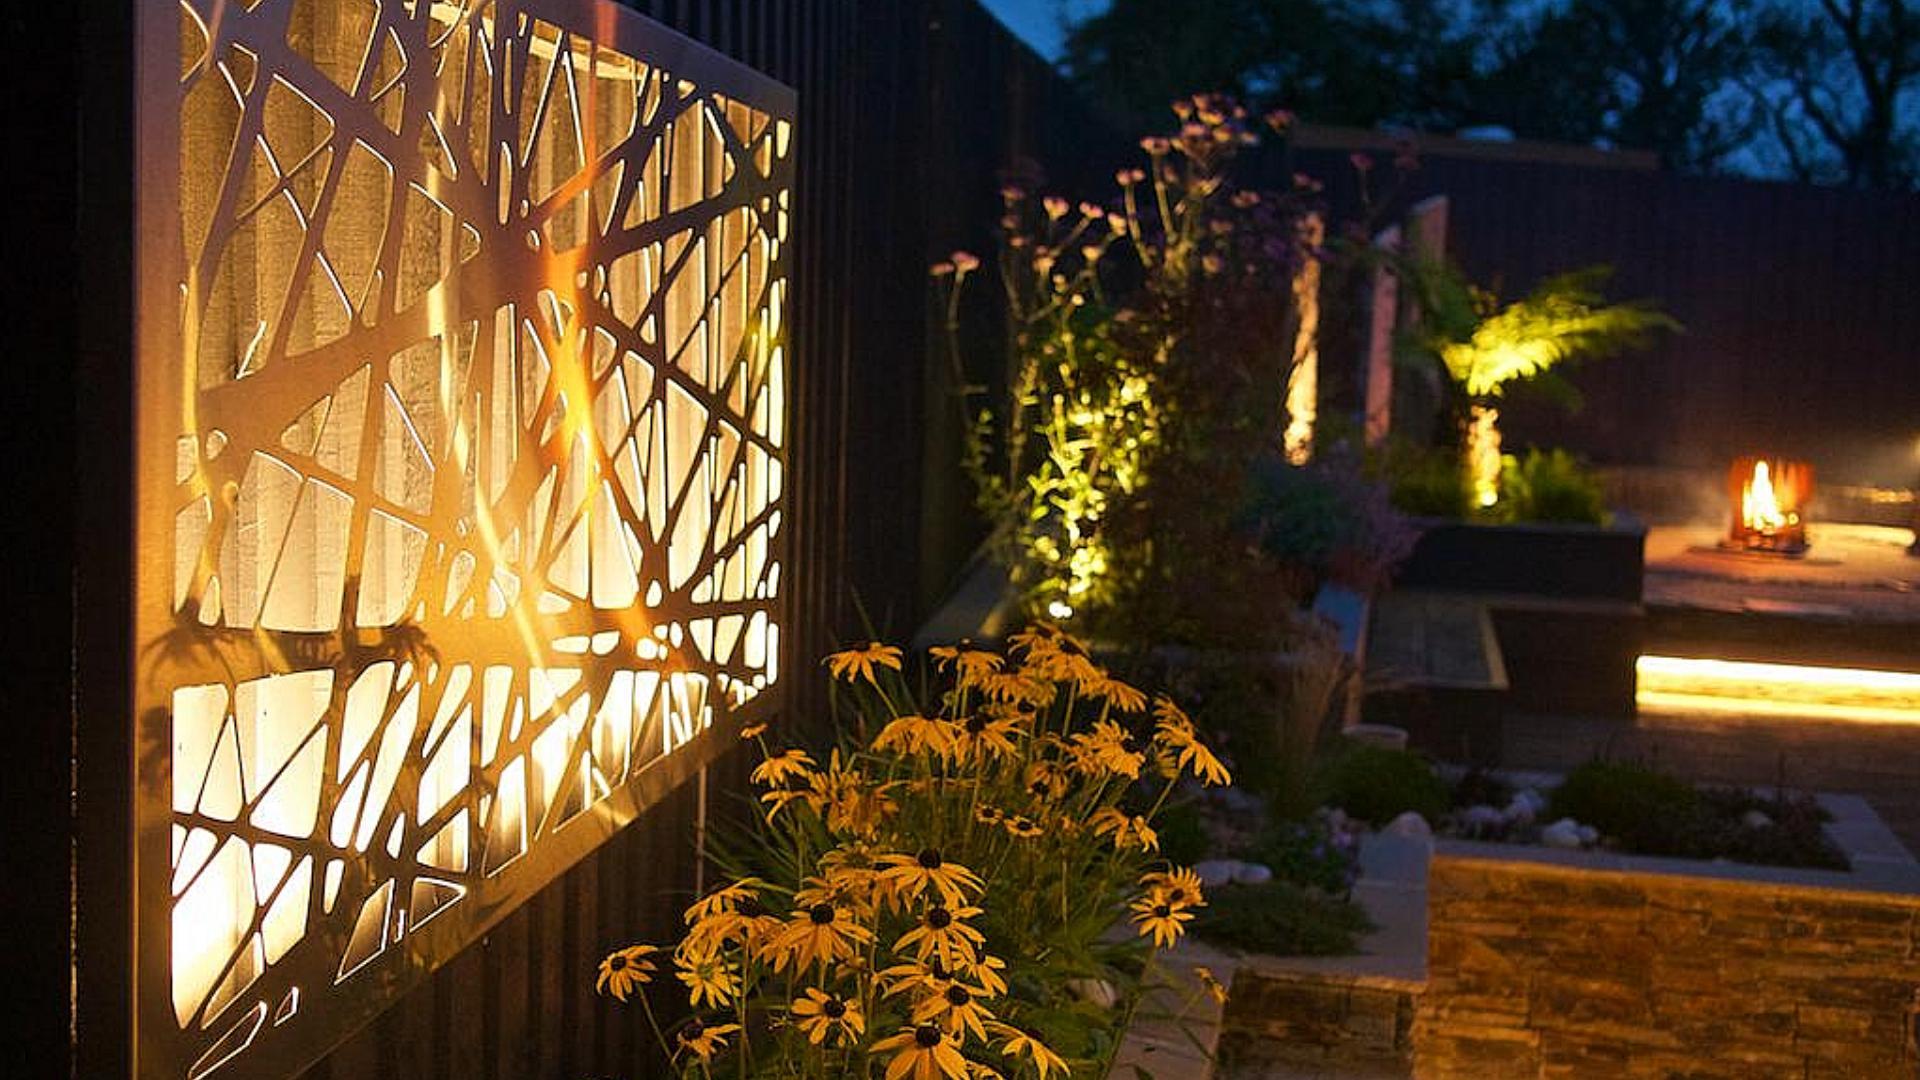 Alison Bockh Garden Design - Dimmable lighting